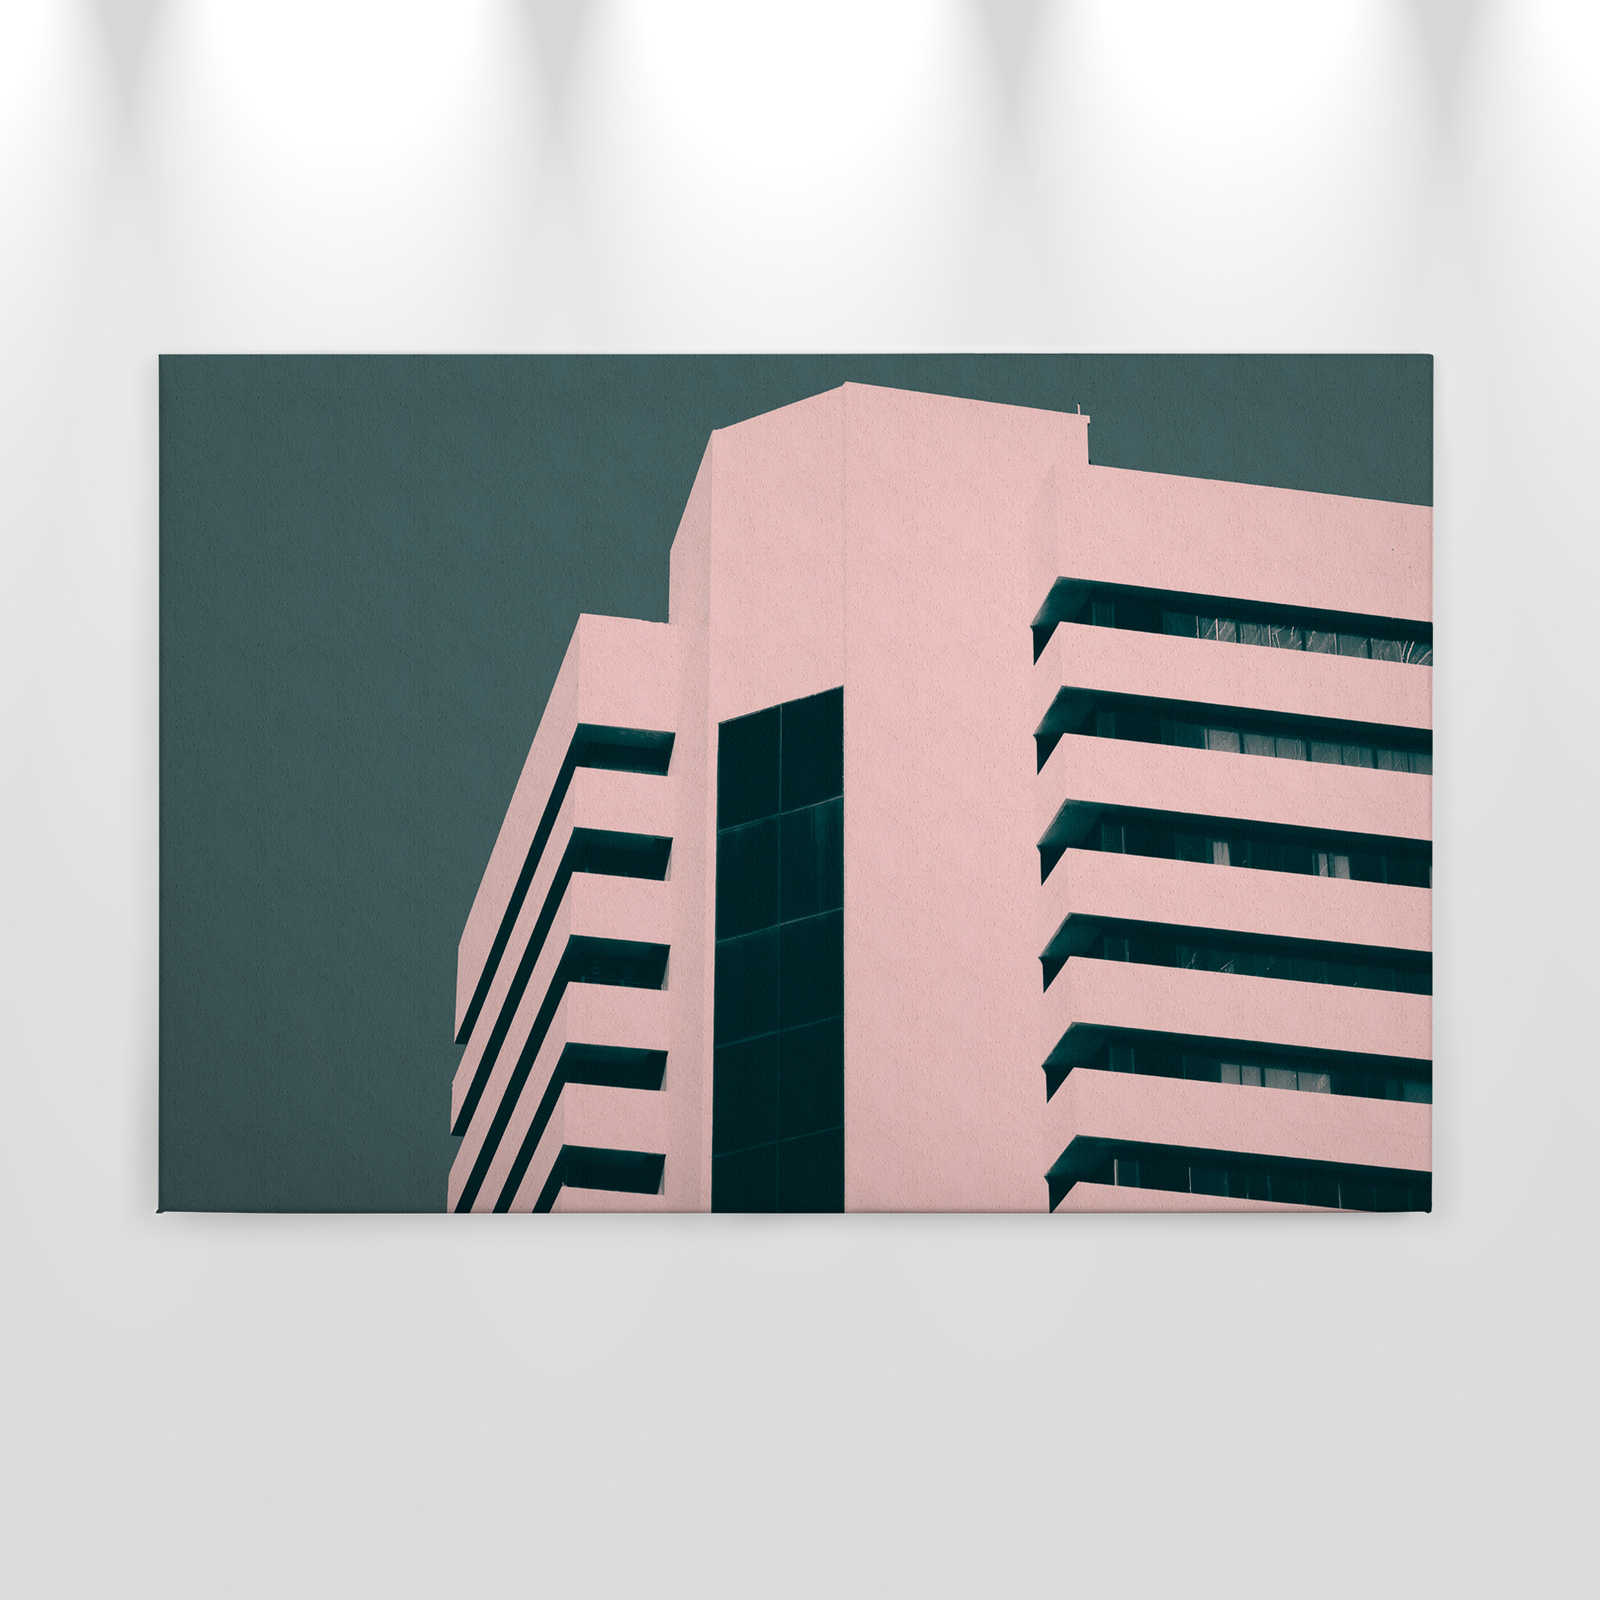             Wolkenkrabber 2 - Canvas schilderij met moderne stadsarchitectuur - ruwbouw - 0.90 m x 0.60 m
        